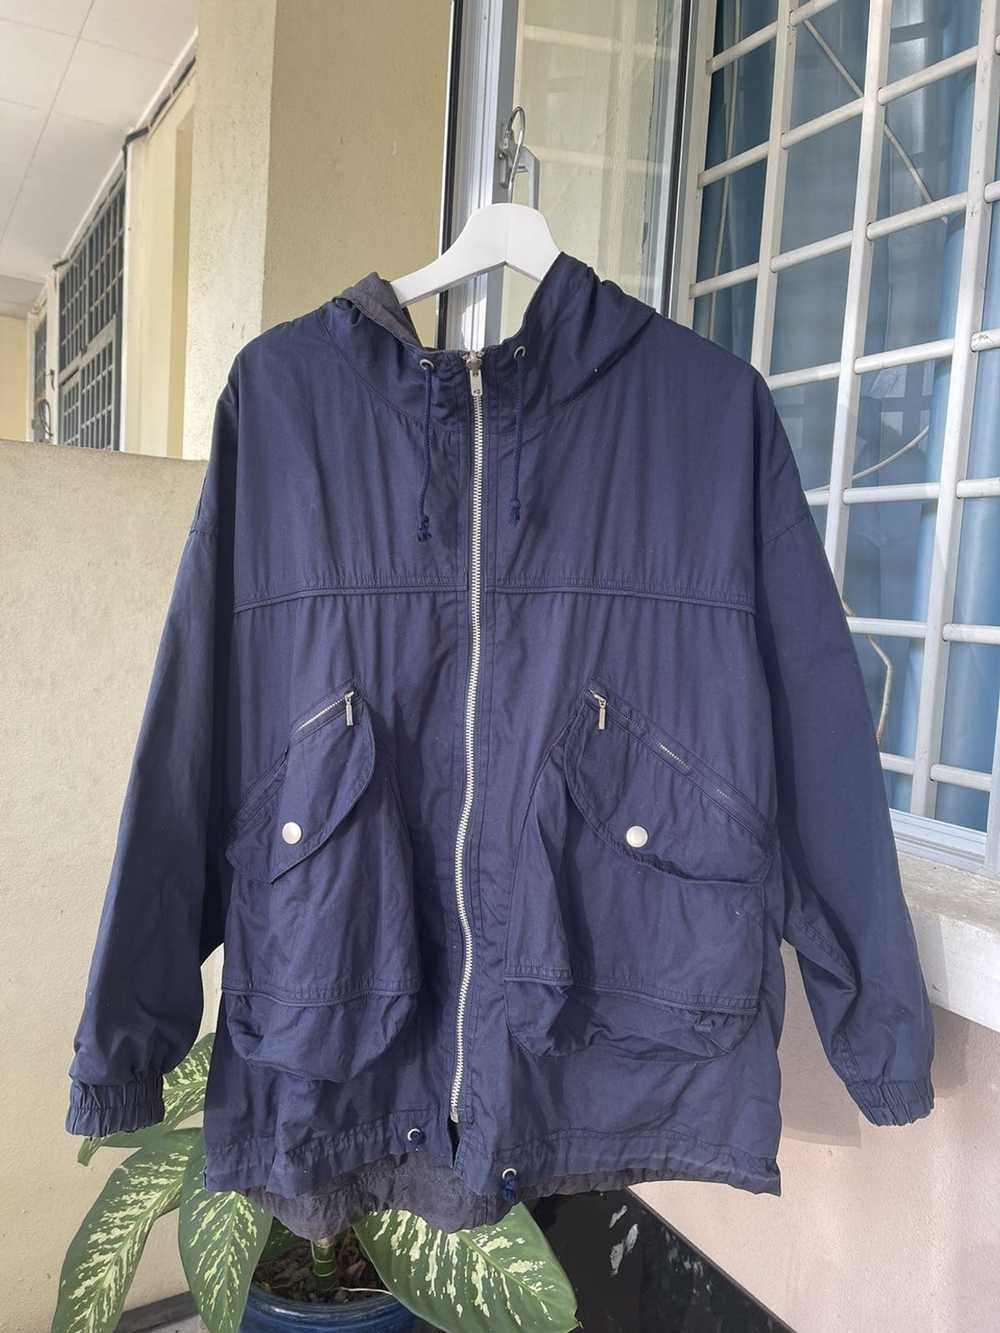 検討させていただきますので70-80s HAI SPORTING GEAR vintage jacket ...